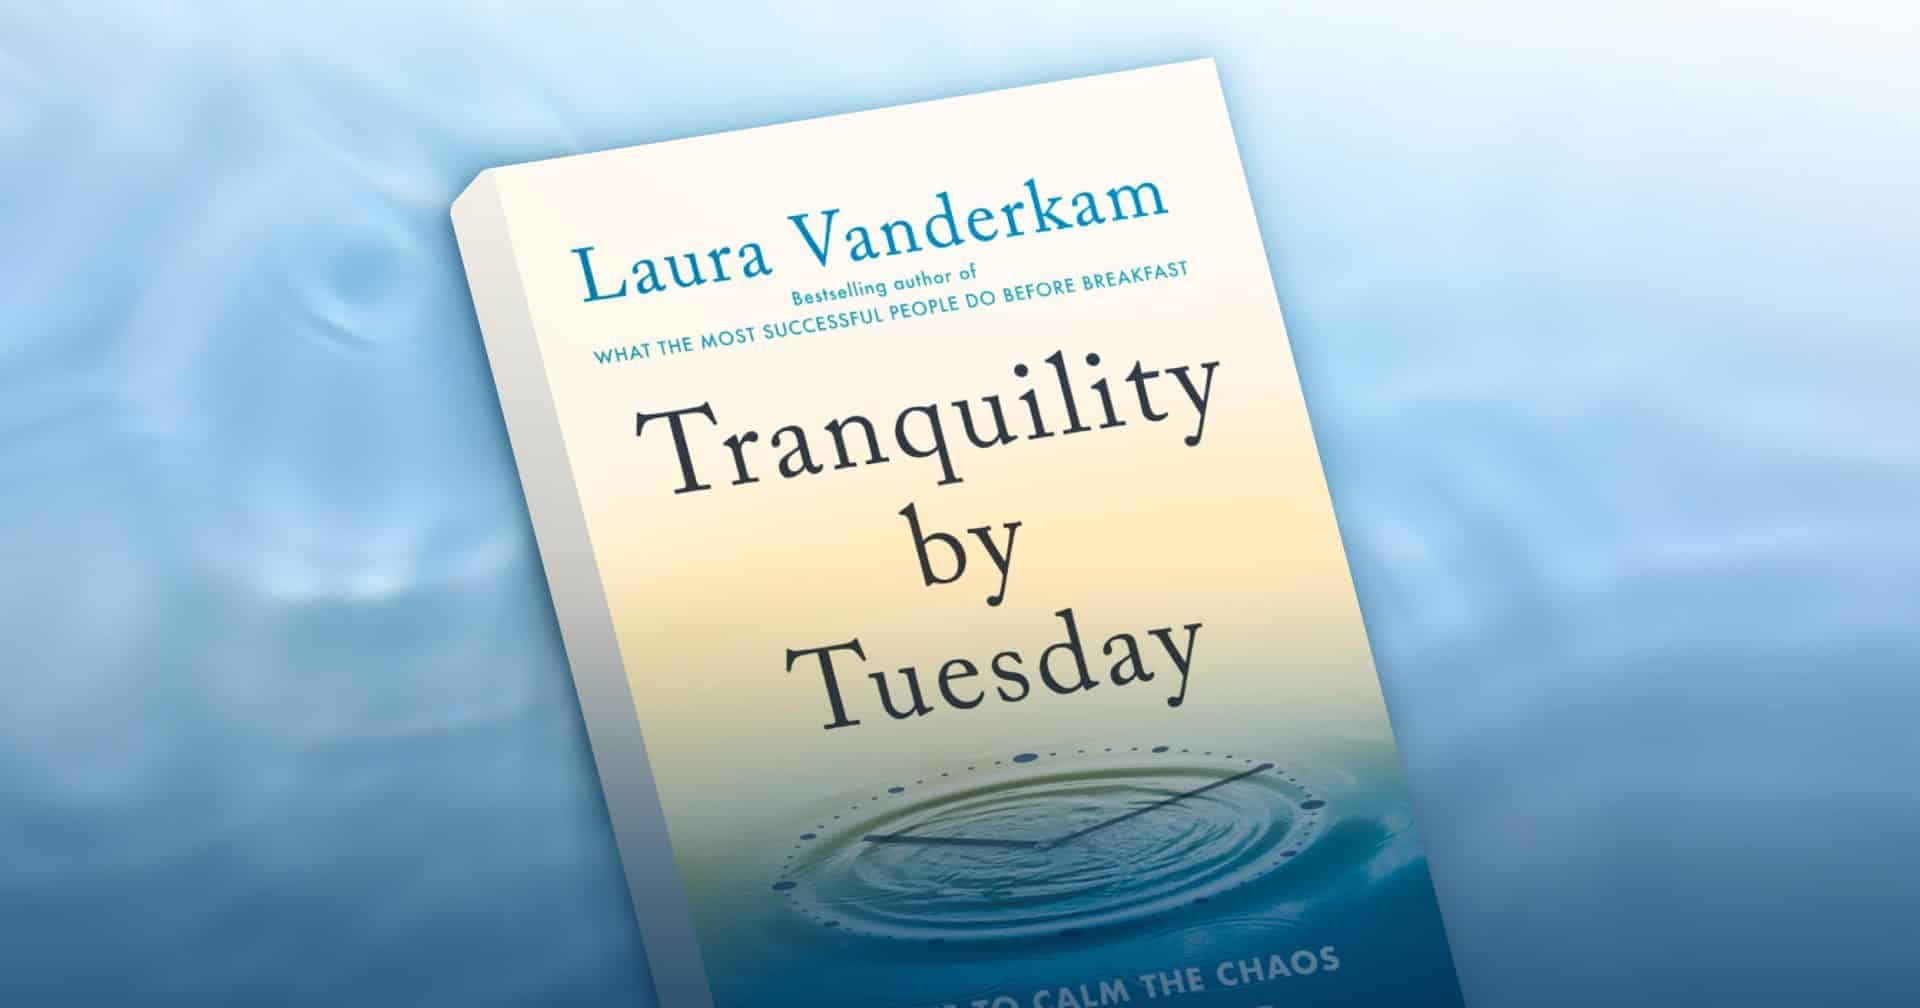 ให้เวลากับสิ่งสำคัญในชีวิต ด้วยกฎการจัดการเวลา 9 ข้อ จากหนังสือ Tranquility by Tuesday